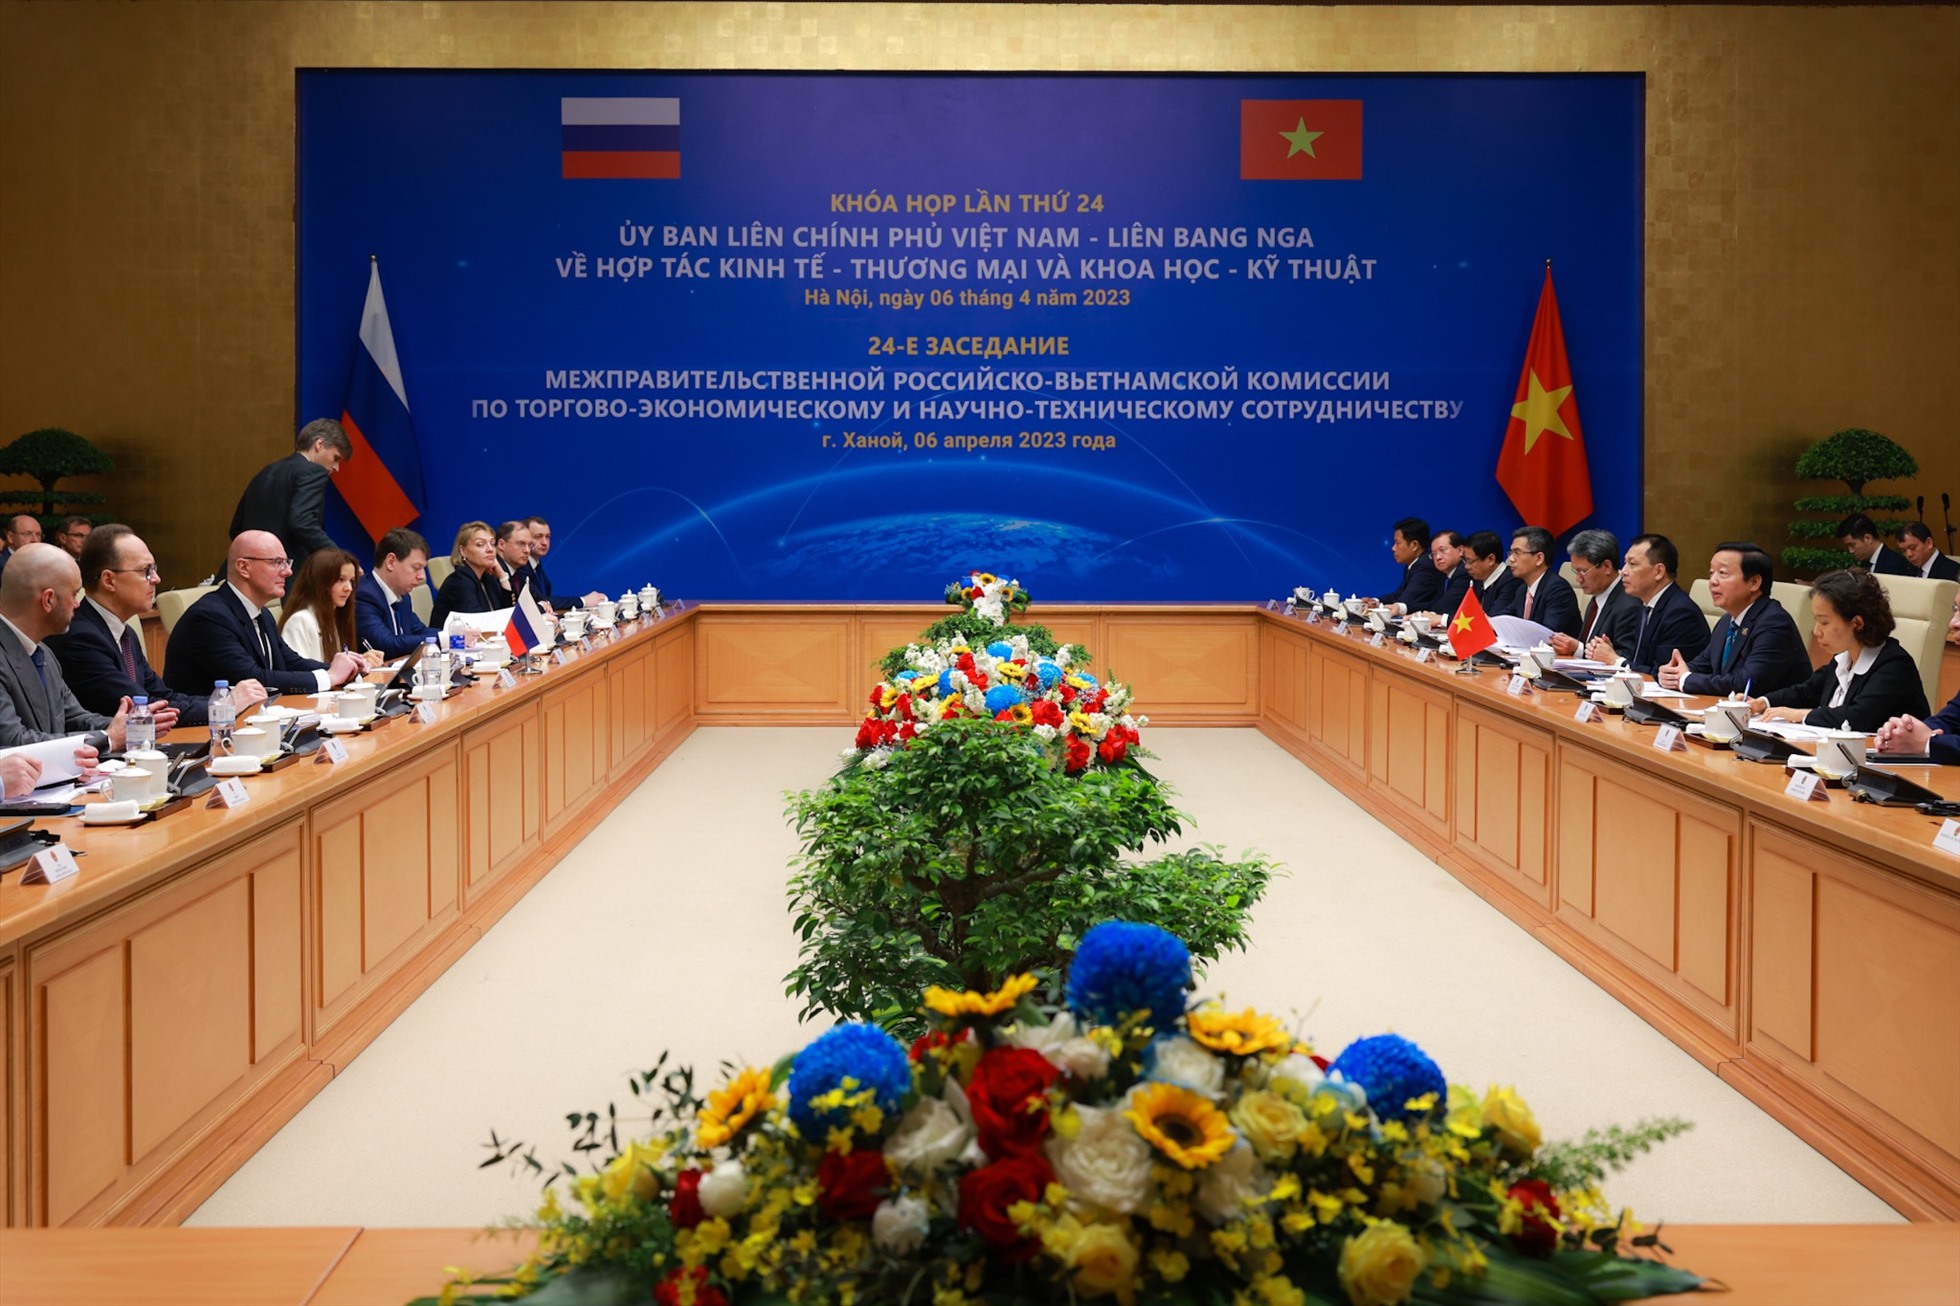 Quang cảnh phiên họp tại Trụ sở Chính phủ sáng 6.4. Ảnh: Hải Nguyễn